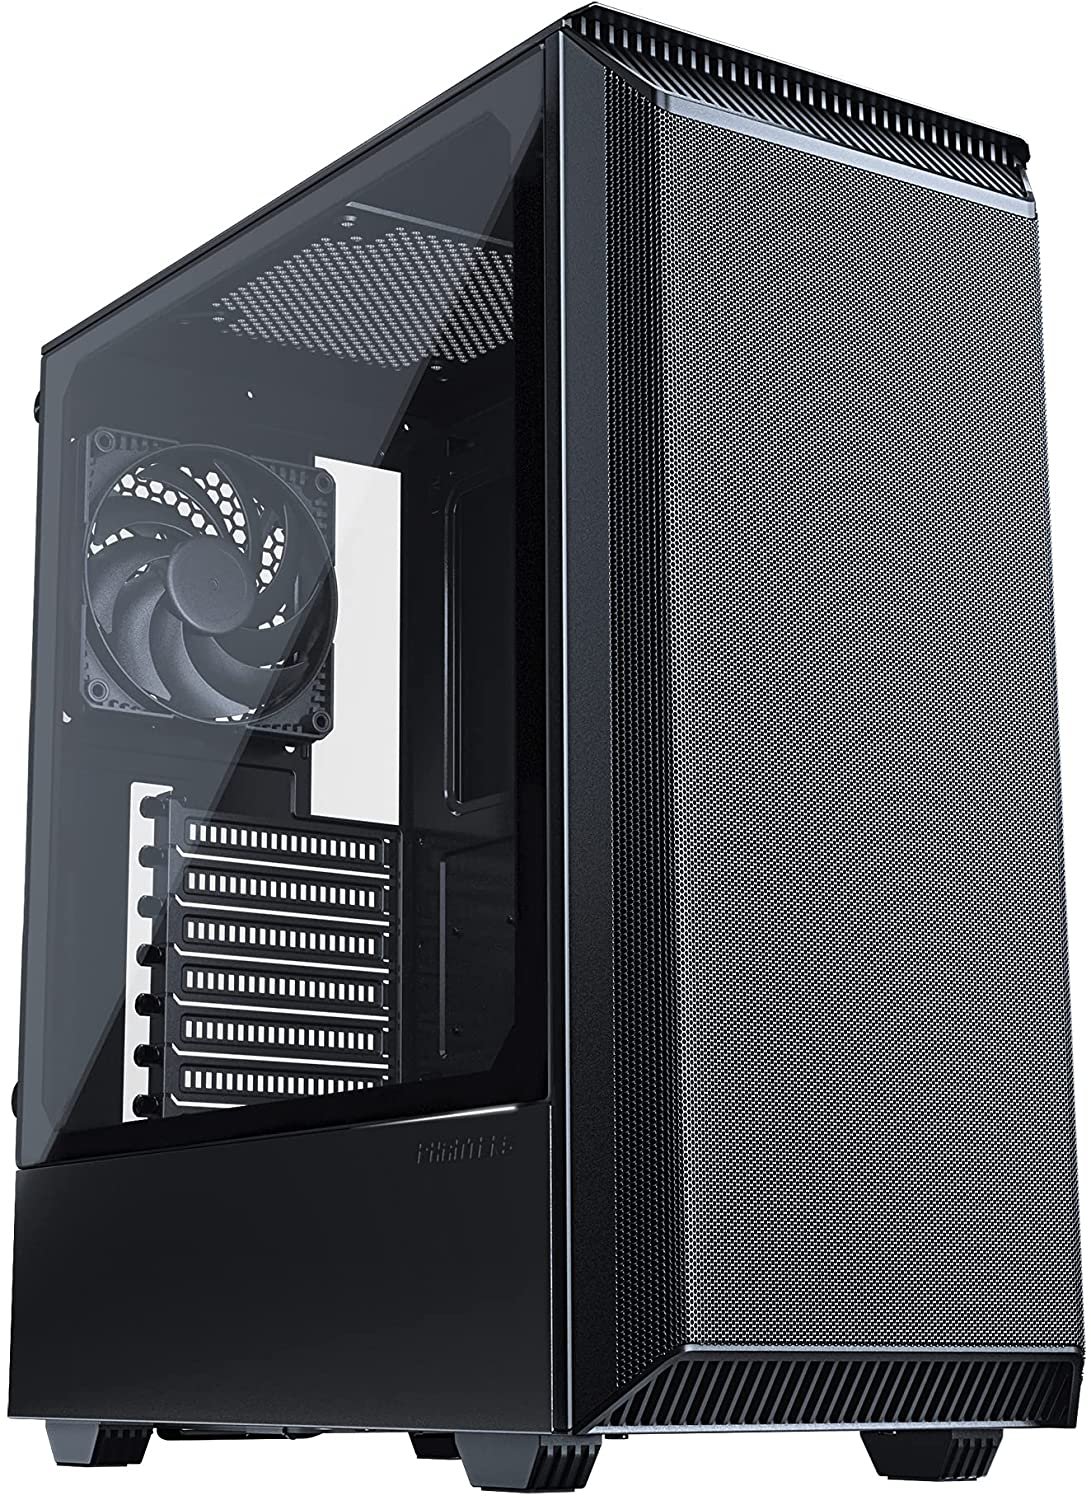 8 PC Case - Best $1000 PC Build 2022